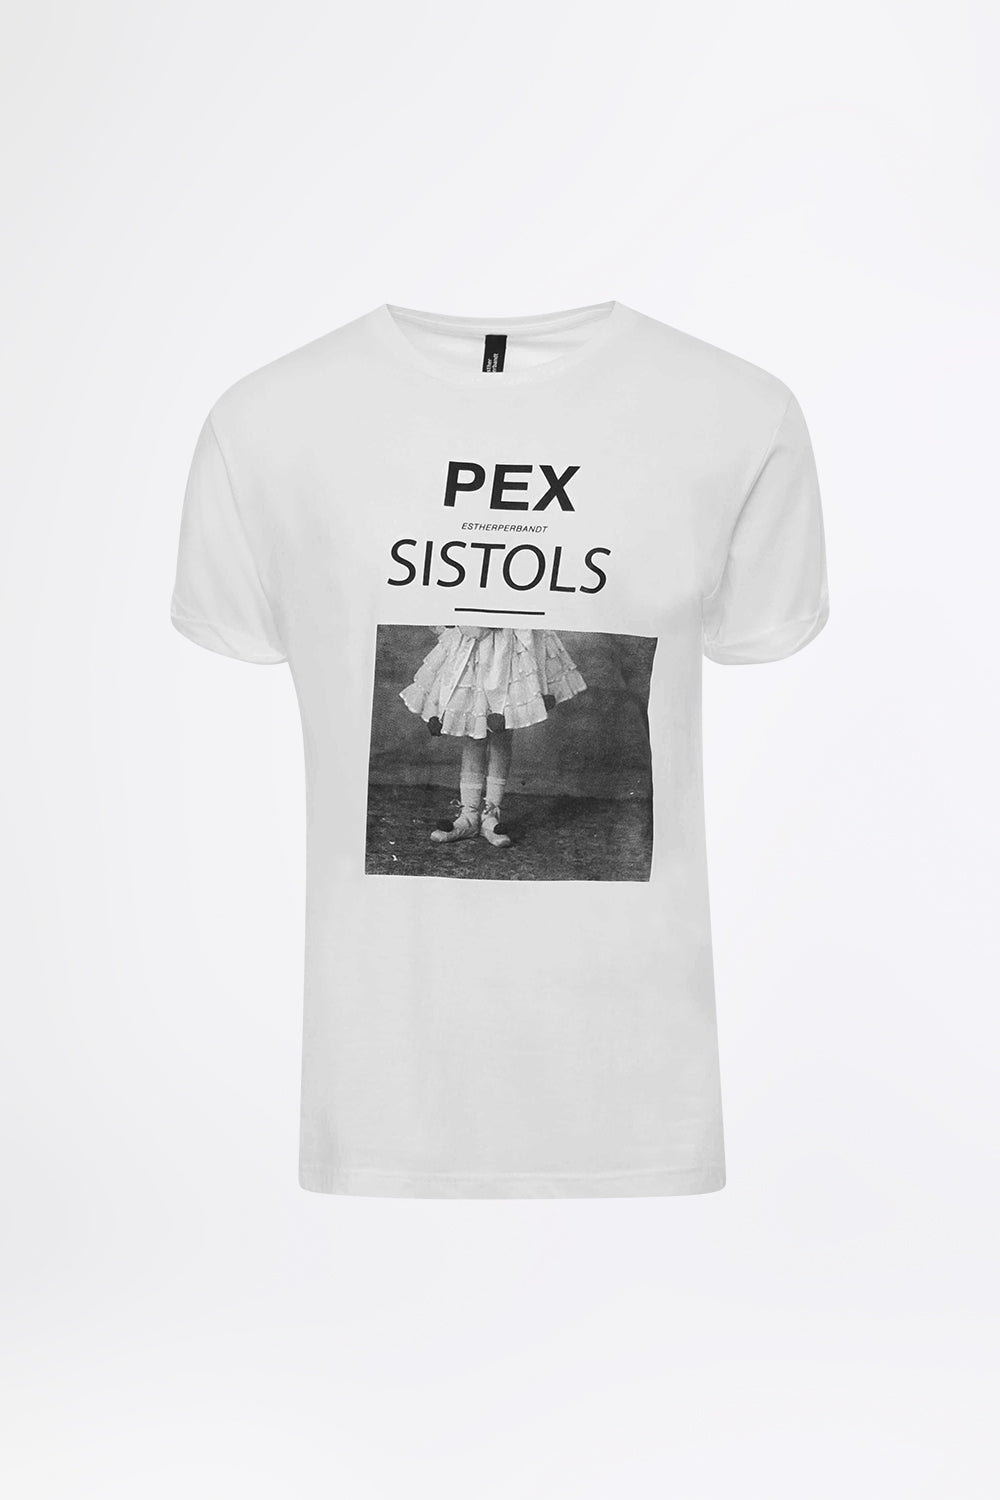 PEX SISTOLS - Statement T-Shirt